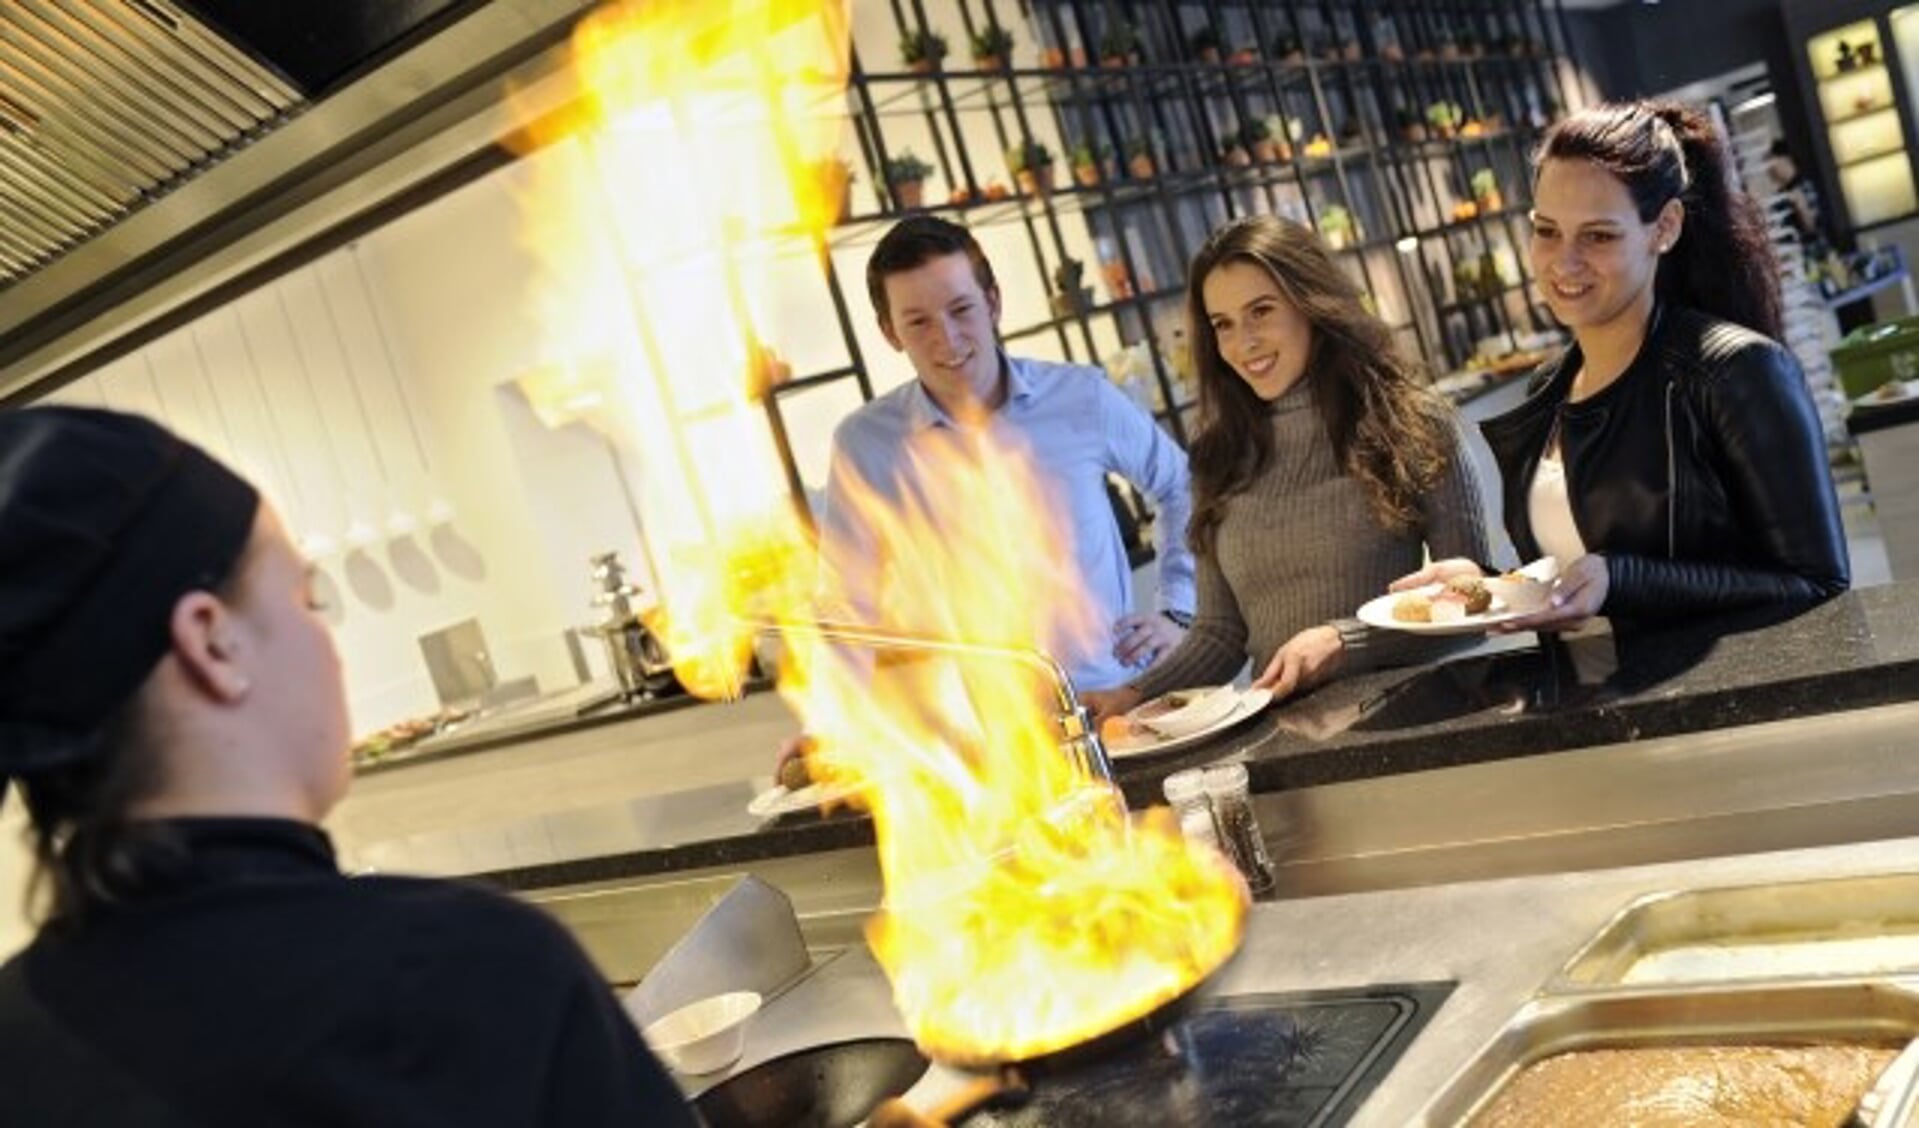 De FlipPas-prijzenpartner van januari is Van der Valk Hotel Tiel. Spaar met de FlipPas en maak kans op een cadeaubon 'Live Cooking Dinner voor 14 personen' ter waarde van 525 euro. (Foto: Janet Kooren)